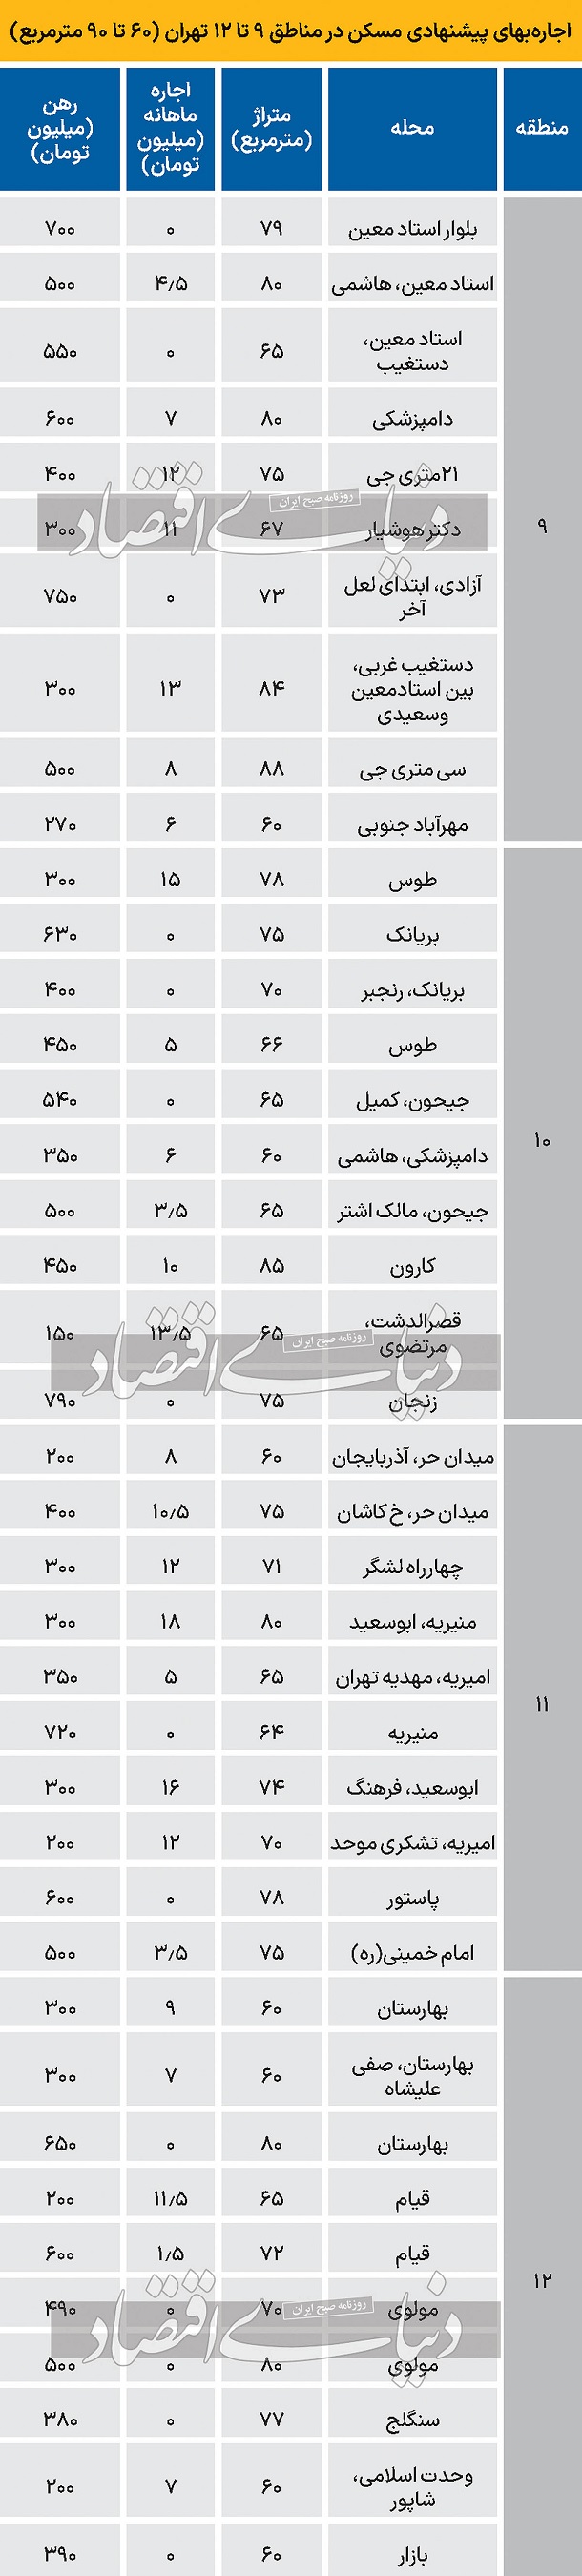 نرخ اجاره آپارتمان در مناطق 9 تا 12 تهران